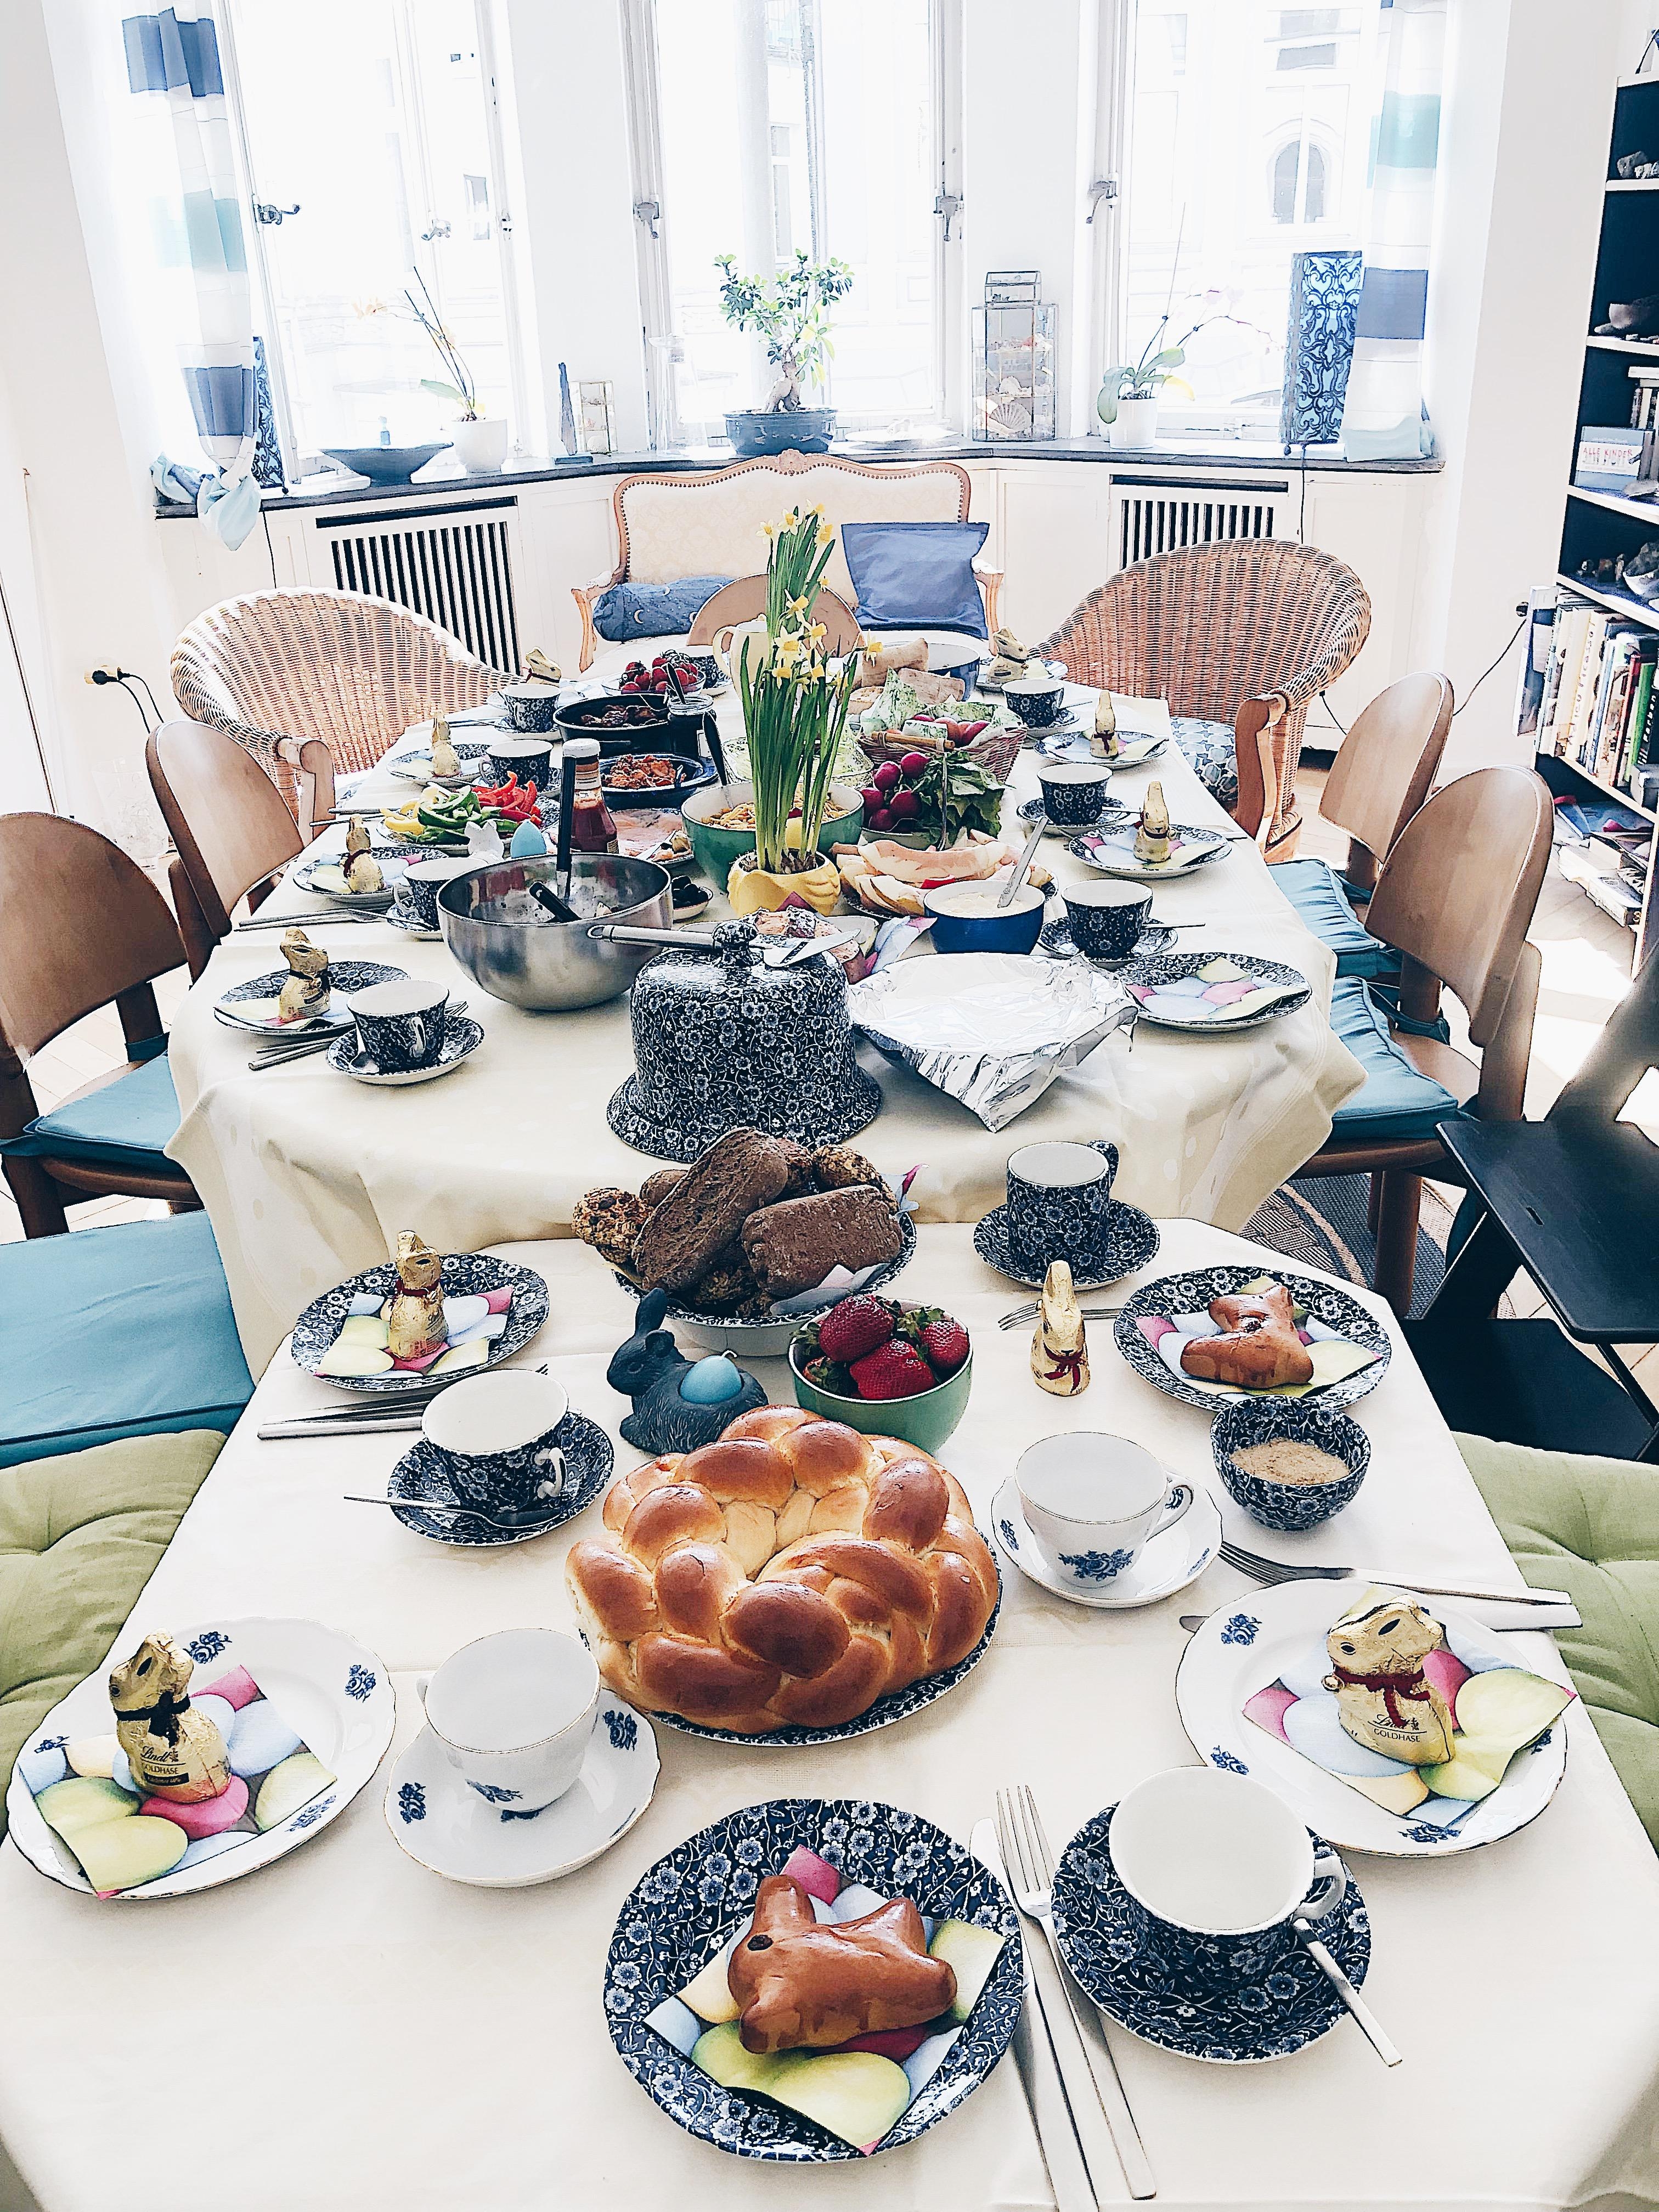 Perfekt table 🐰 #happyeaster #brunch #easterbrunch 